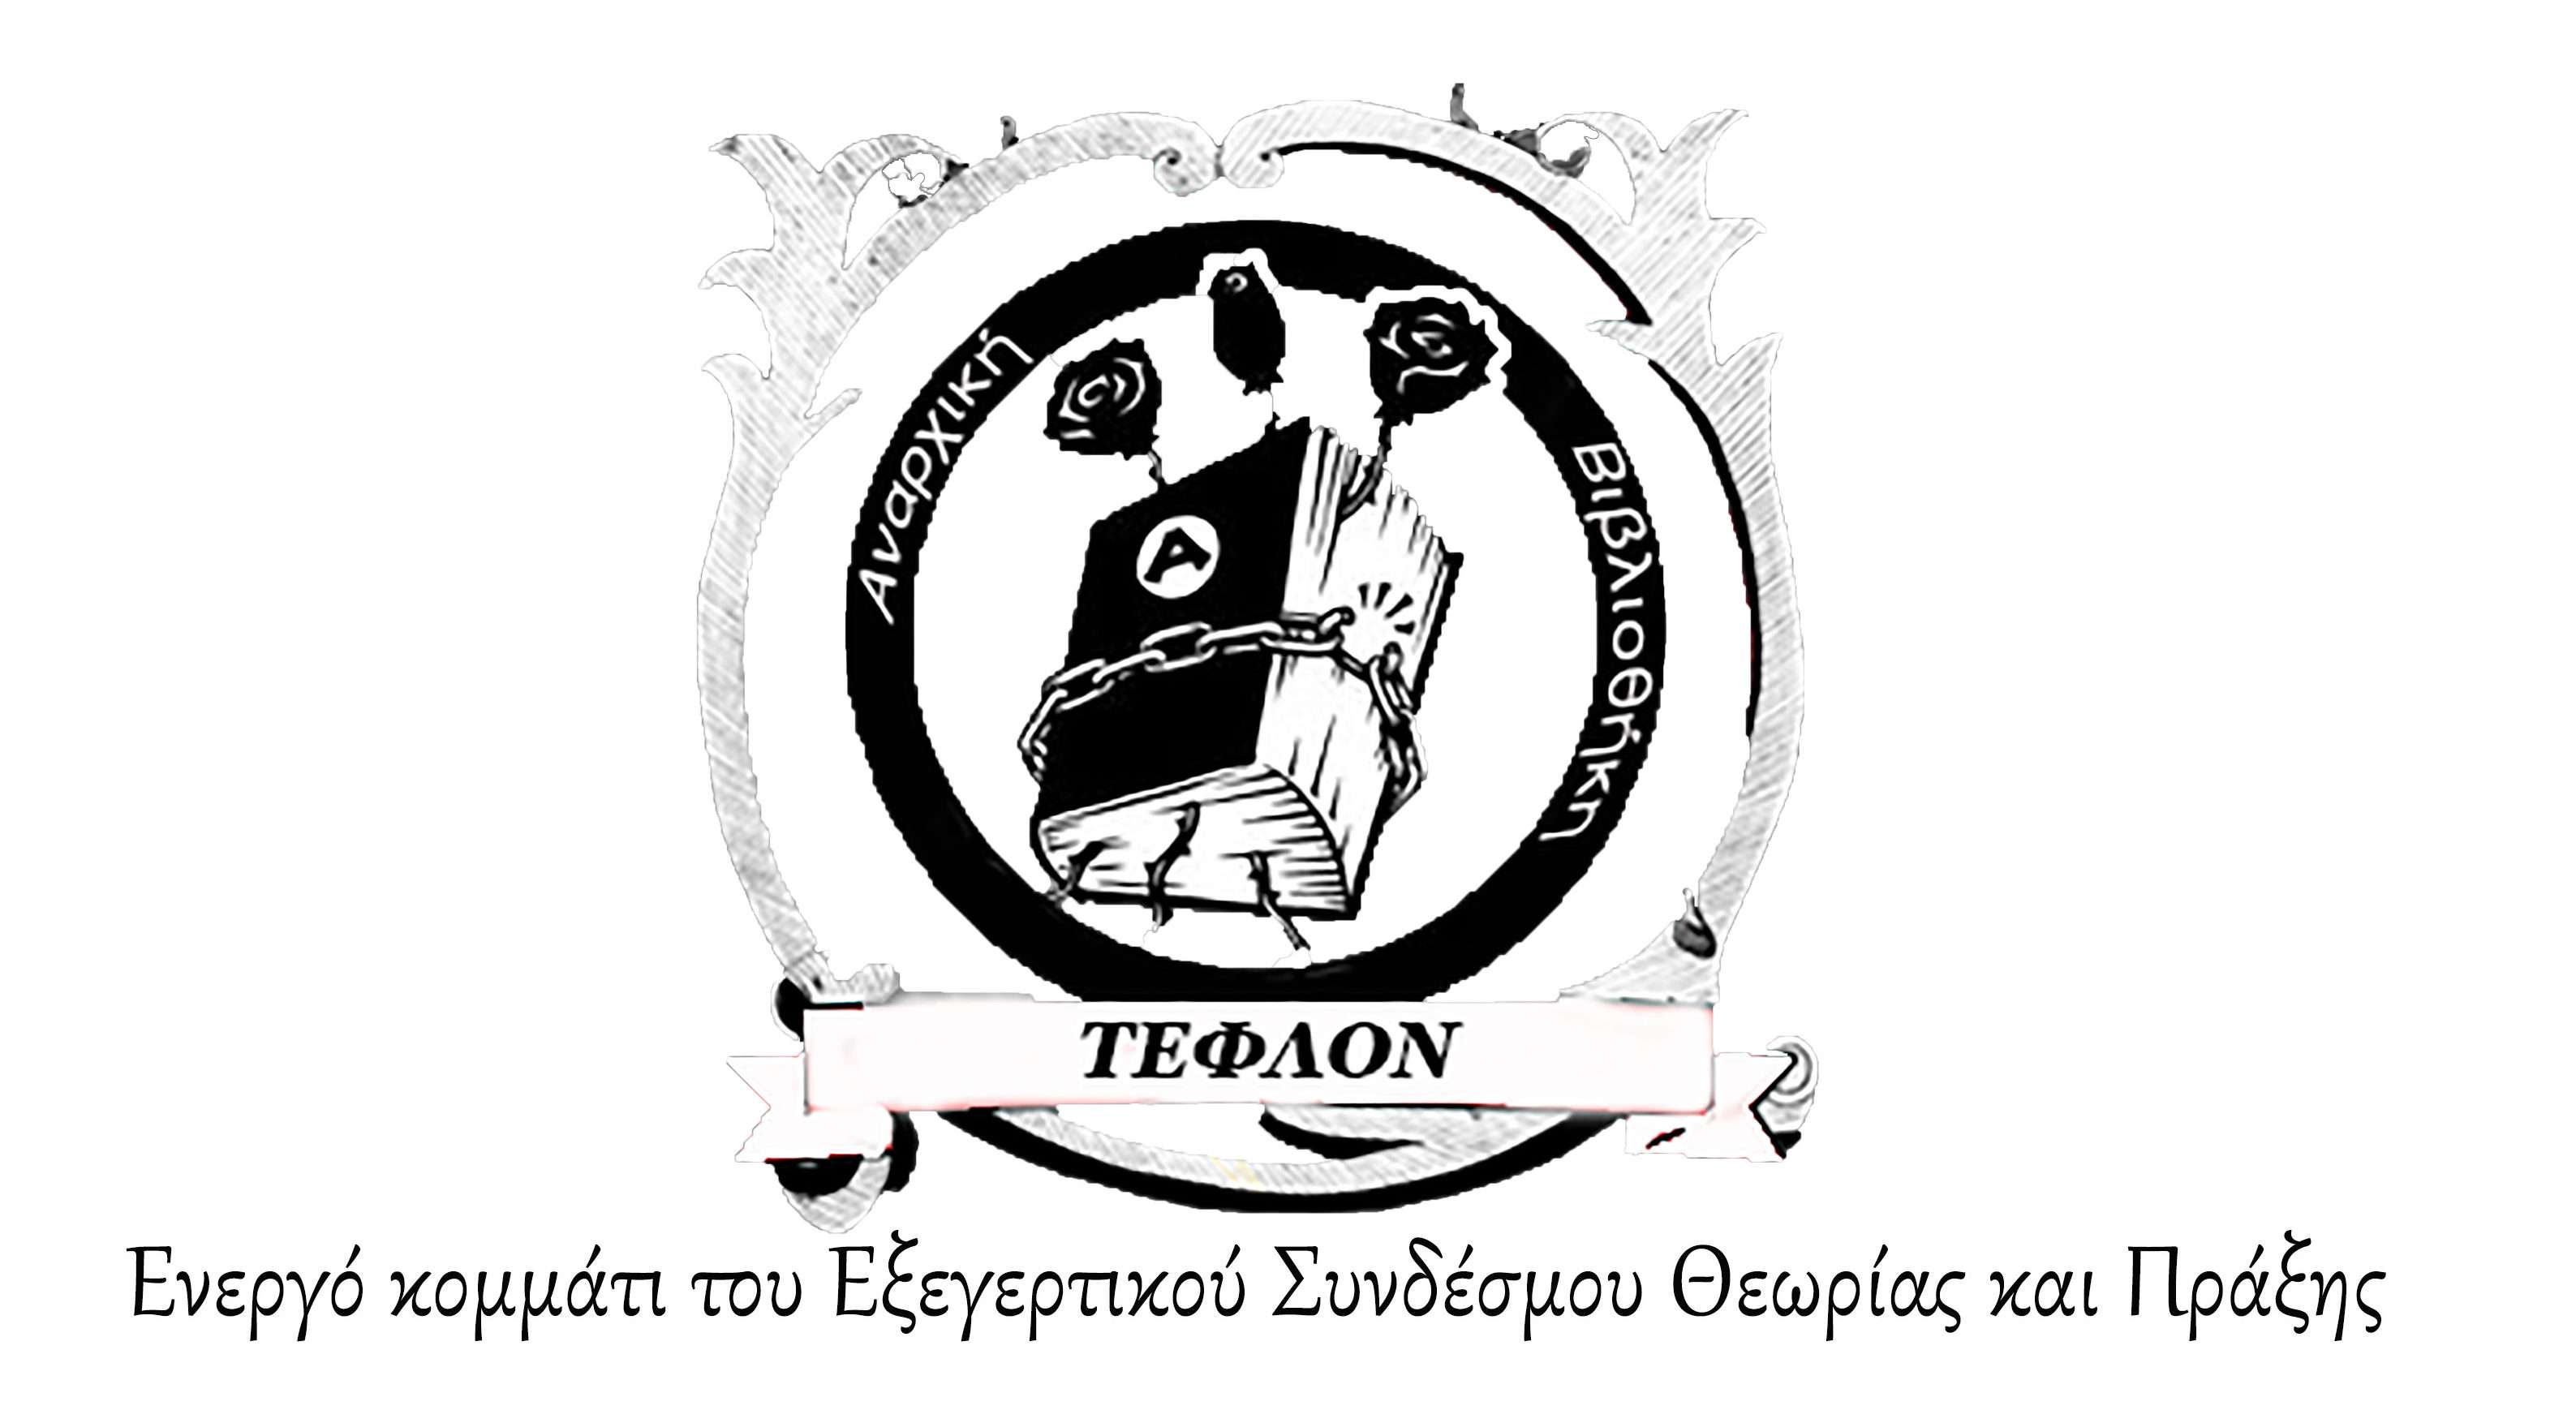 Αναρχική βιβλιοθήκη Τεφλόν: Περί εθνικής ενότητας και άλλων ψευδαισθήσεων